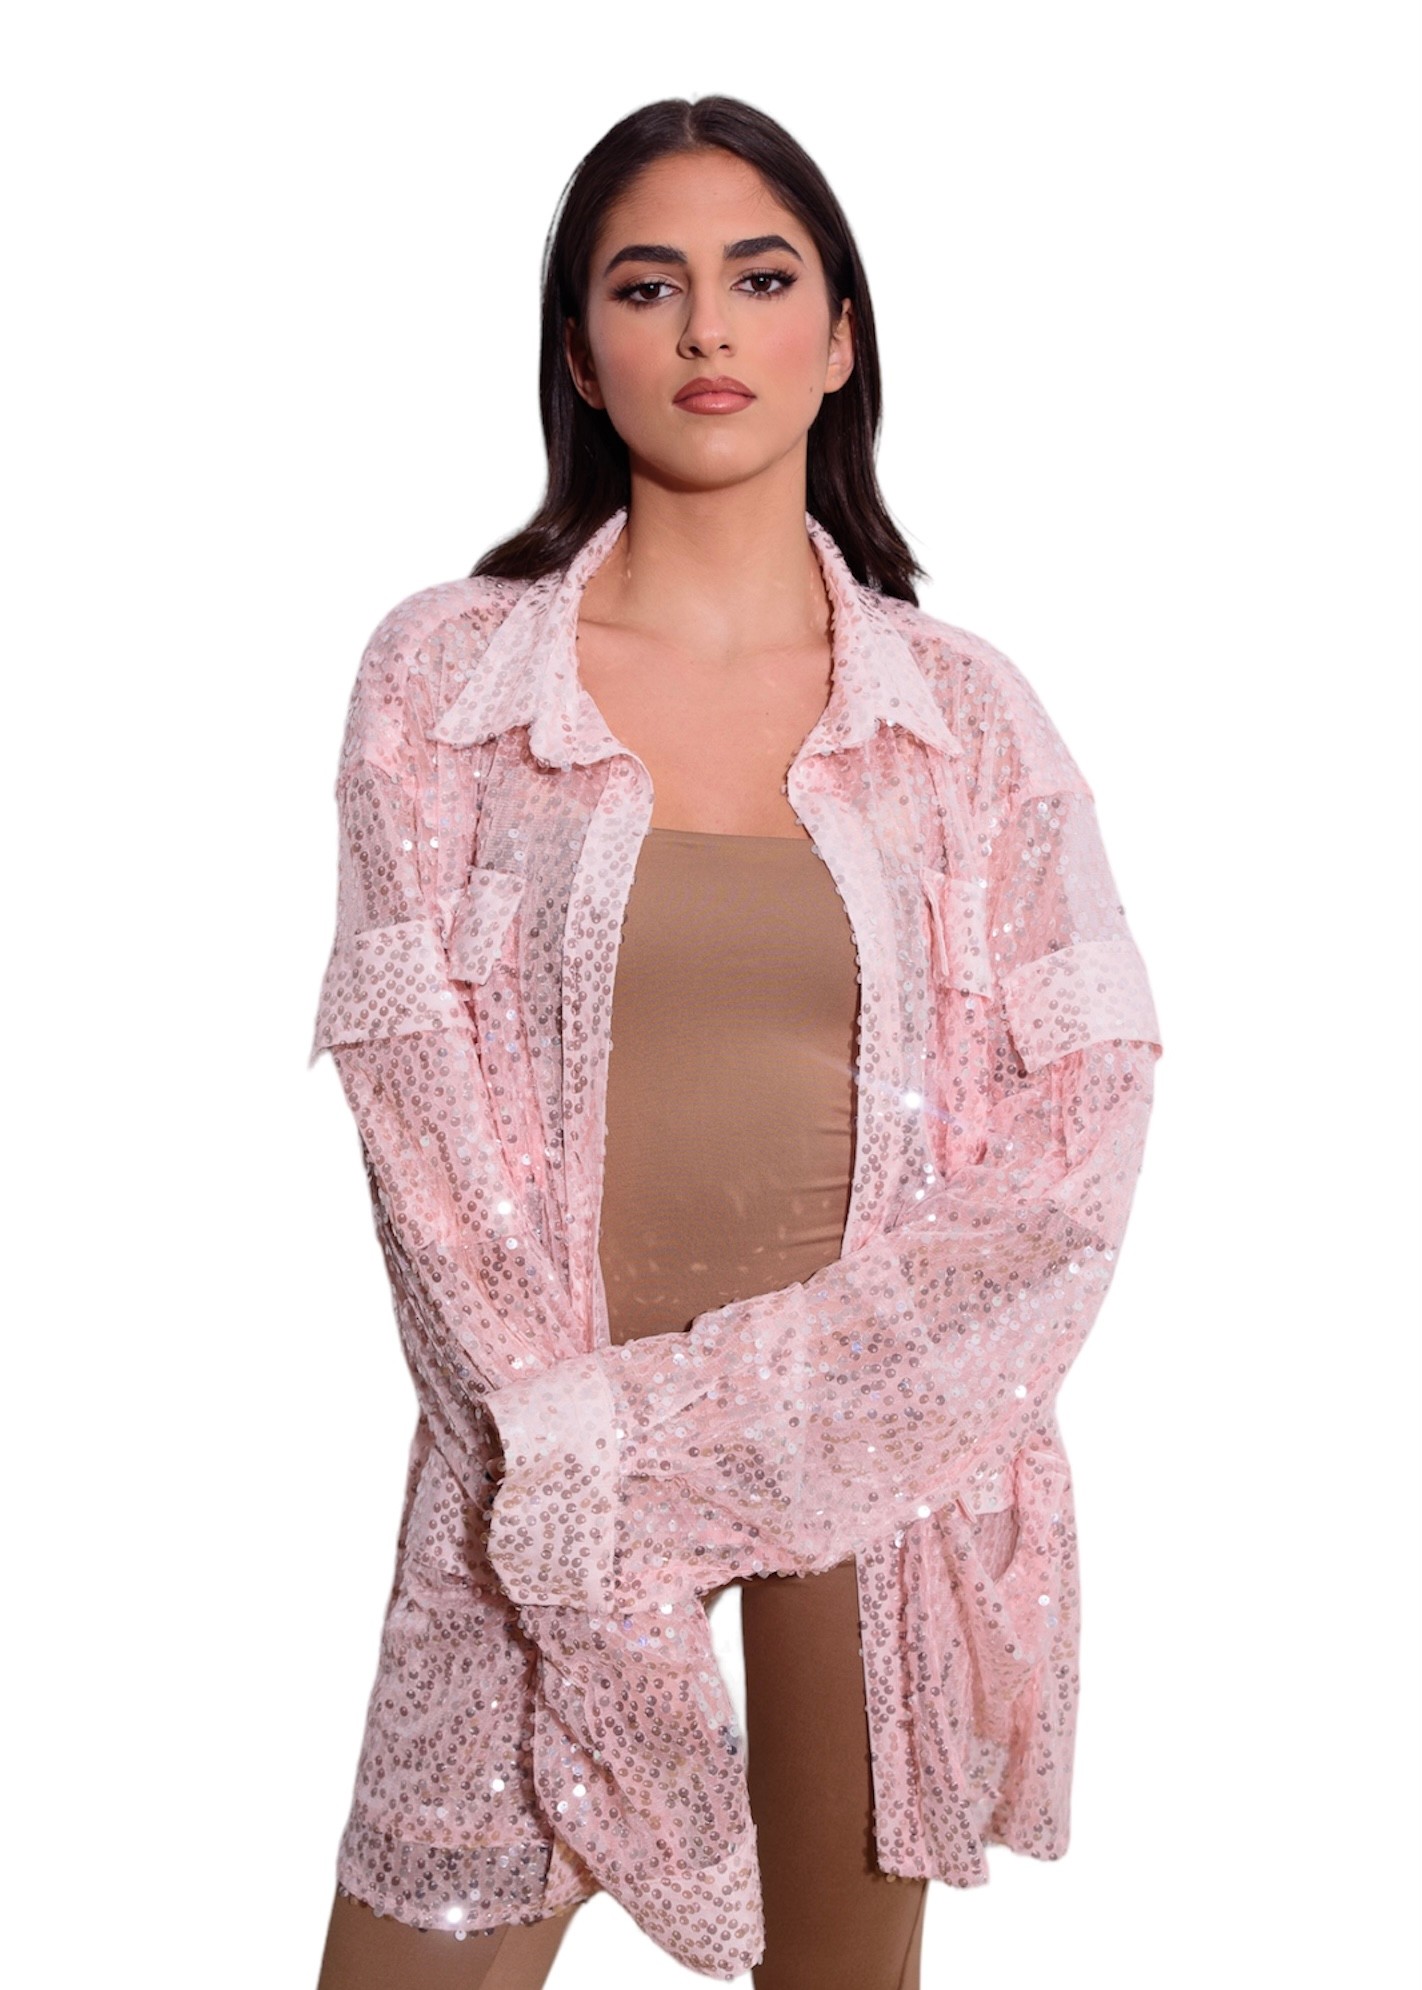 Transparent pink sequin shirt 